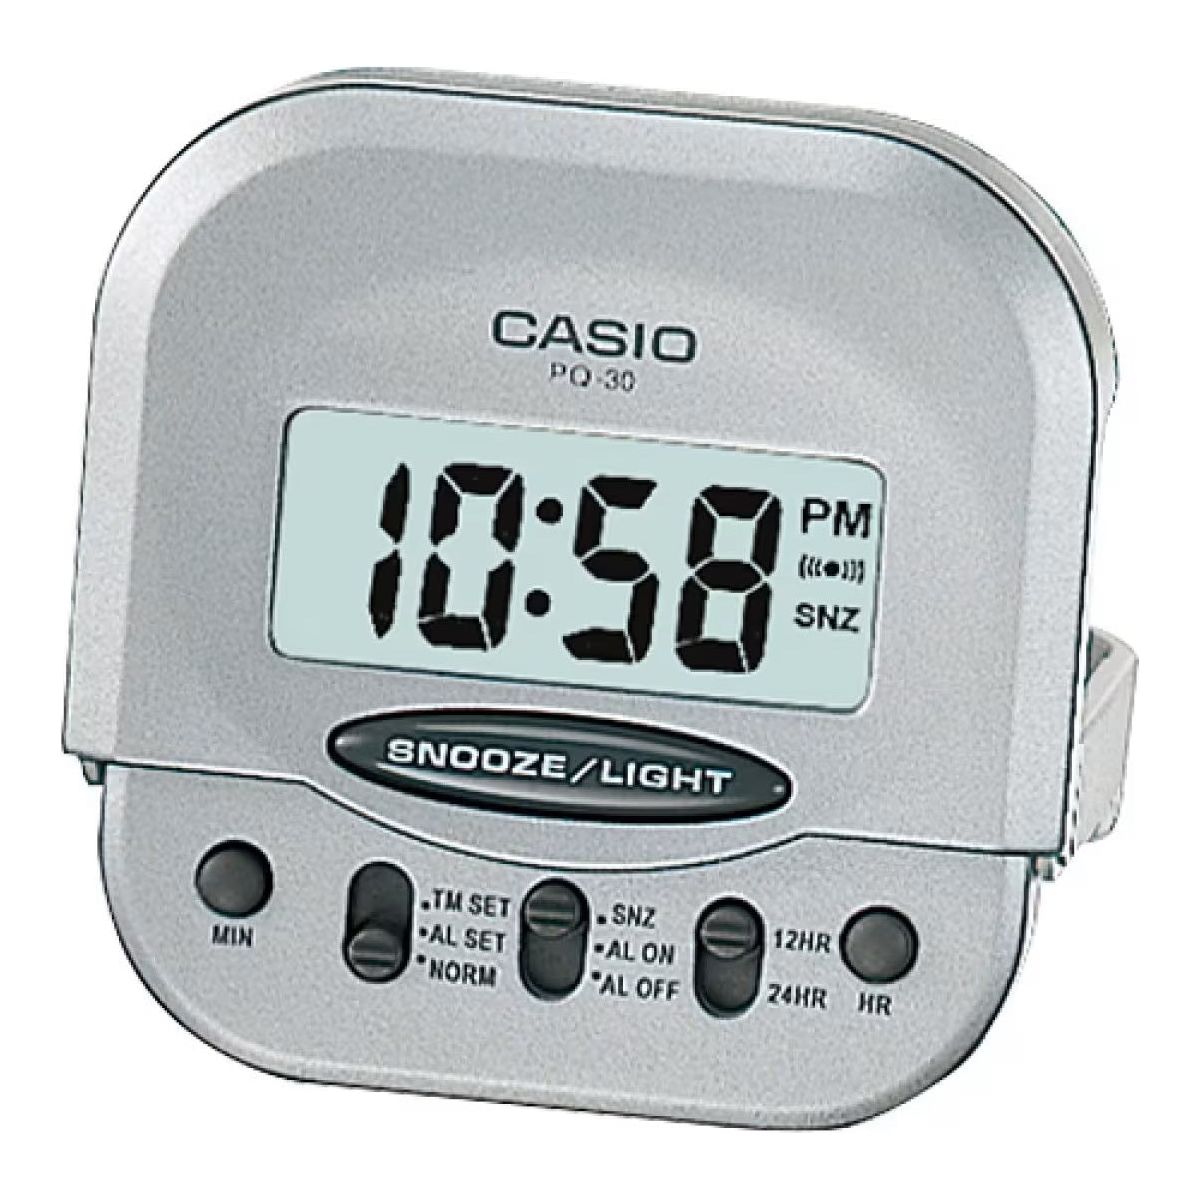 CASIO CLOCKS CASIO ALARM CLOCK Mod. PQ-30-8DF WATCHES casio-alarm-clock-mod-pq-30-8df